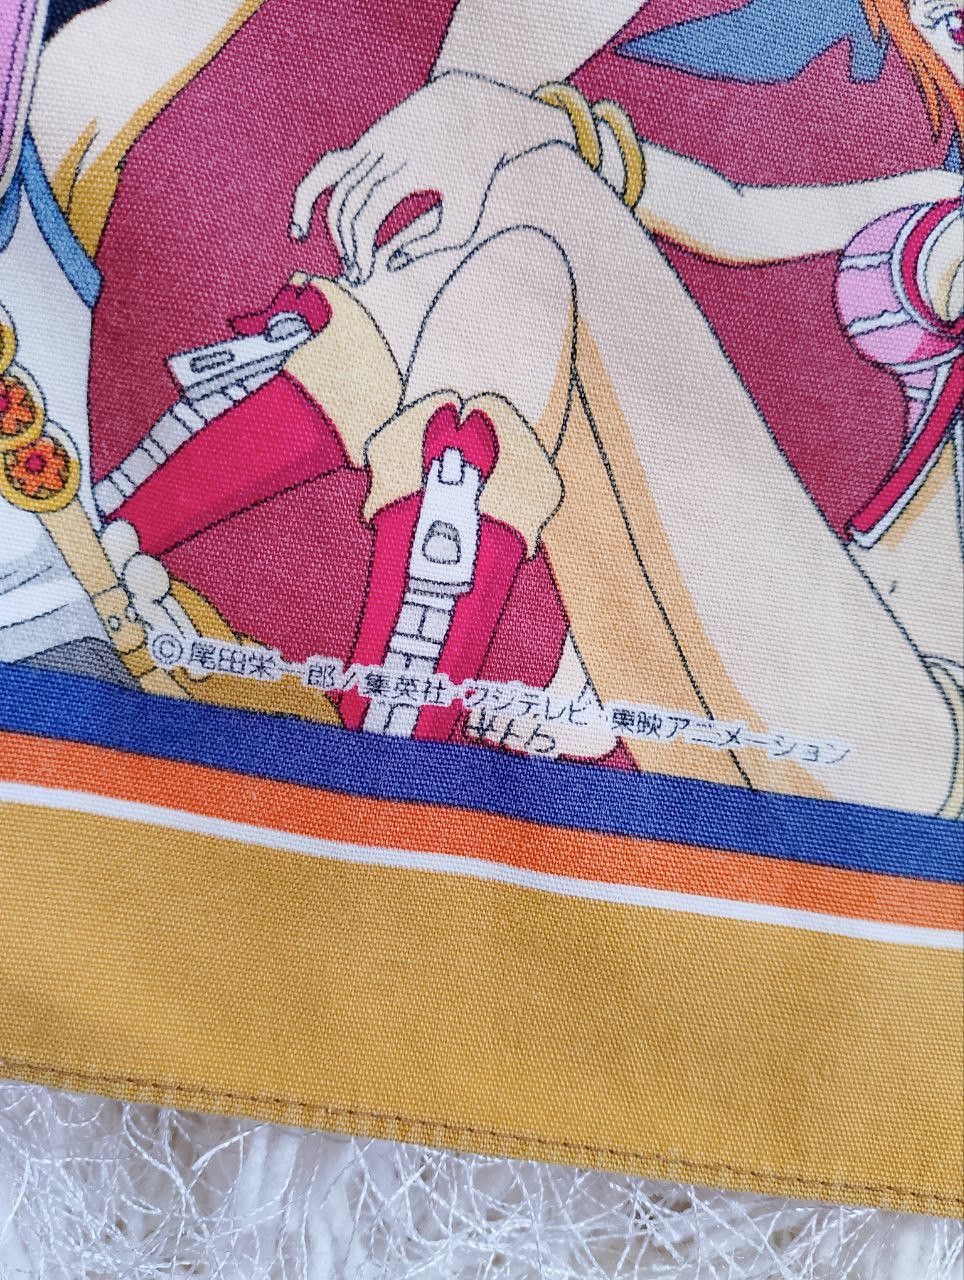 One Piece by Matsuyama Made in Japan Handkerchief Bandana - 8